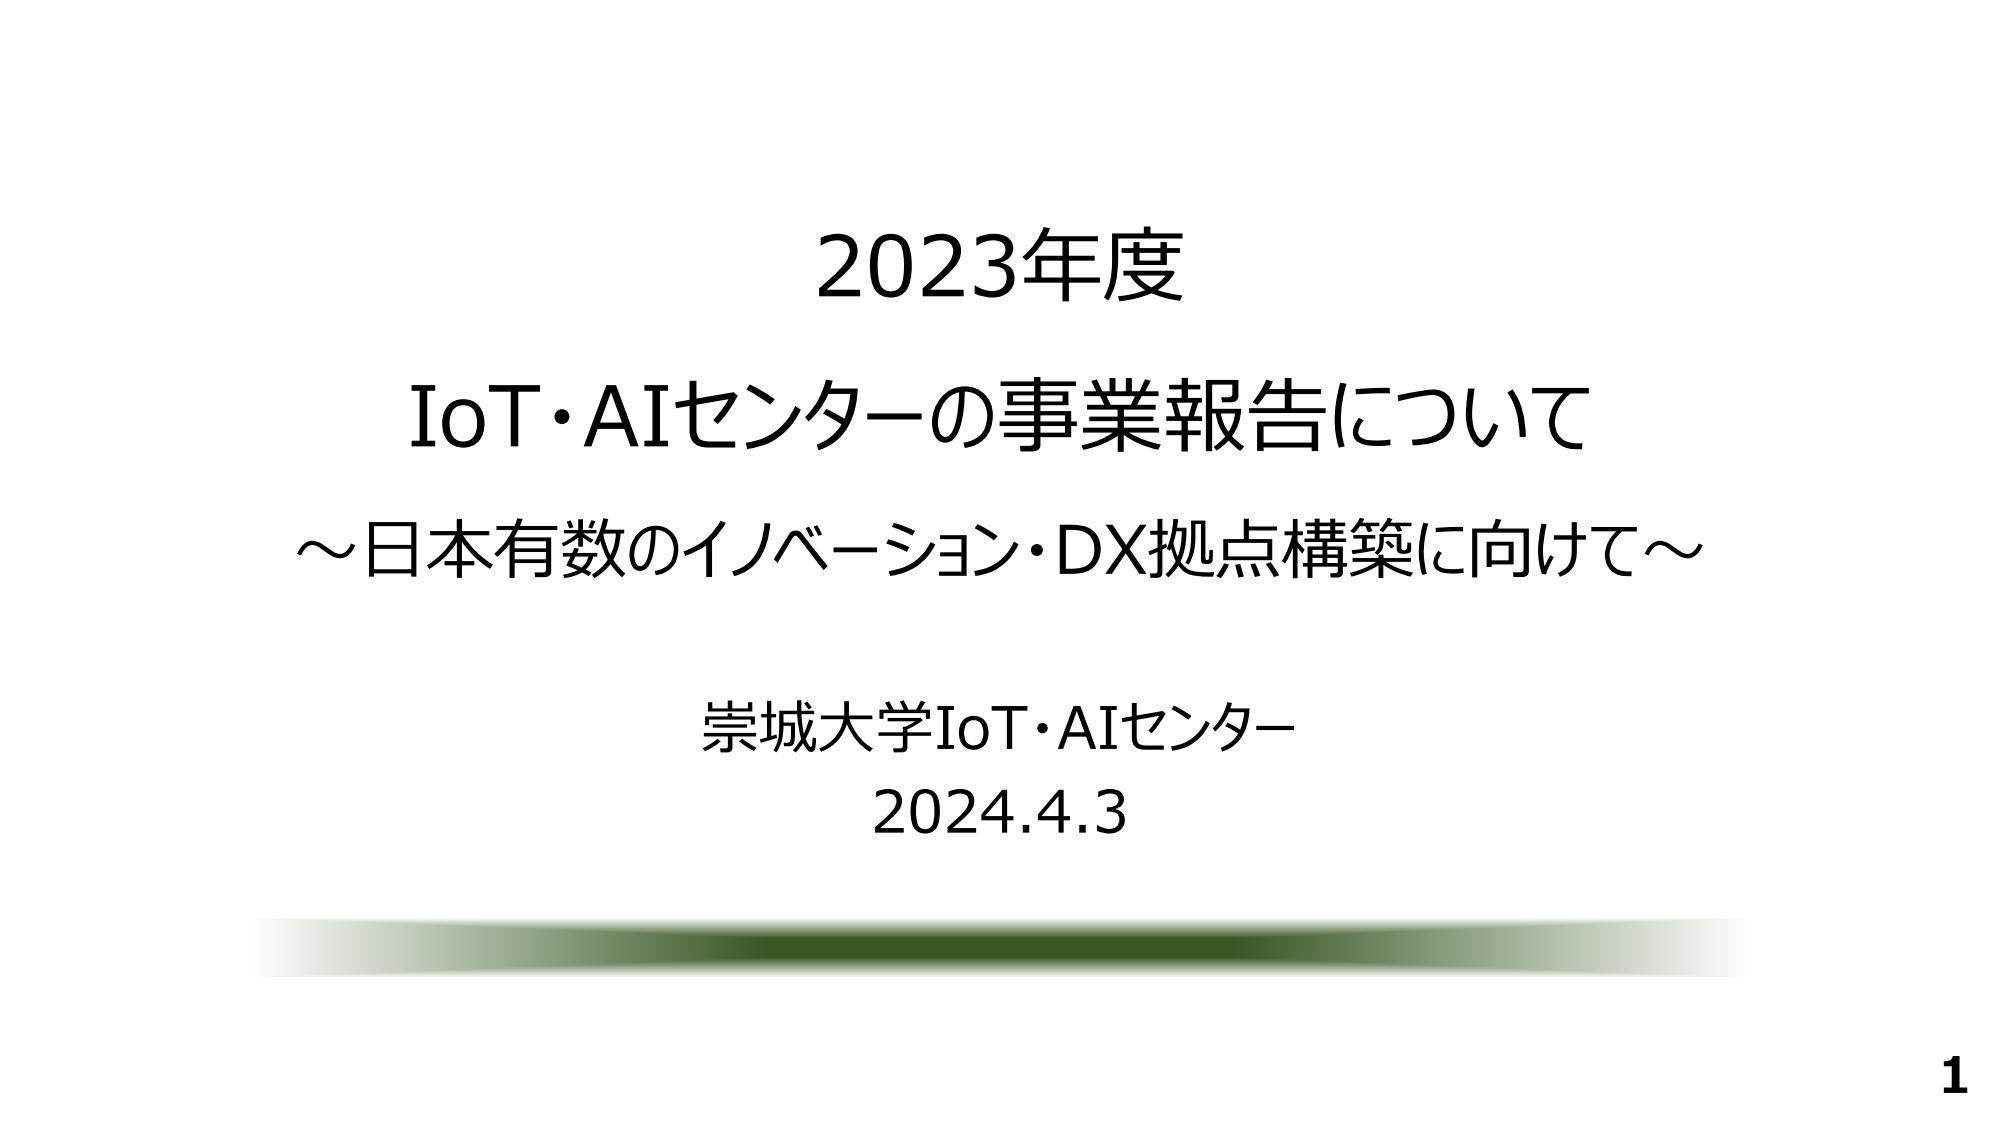 2023IoTセンターの取組 240403大学諮問会資料画像圧縮版v71